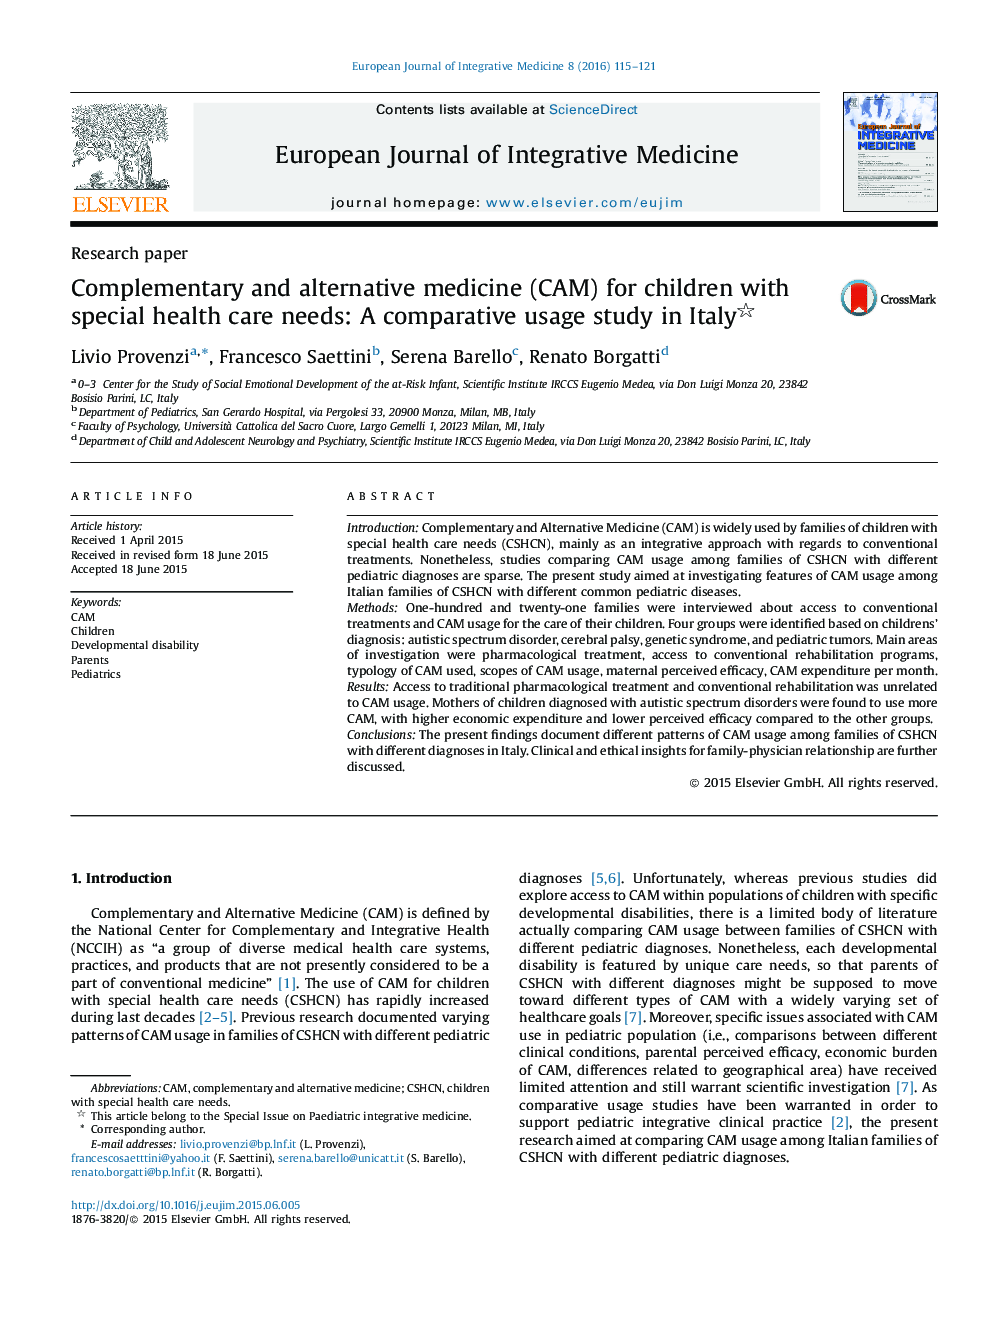 طب مکمل و جایگزین (CAM) برای کودکان با نیازهای ویژه مراقبت های بهداشتی: مطالعه تطبیقی استفاده در ایتالیا 